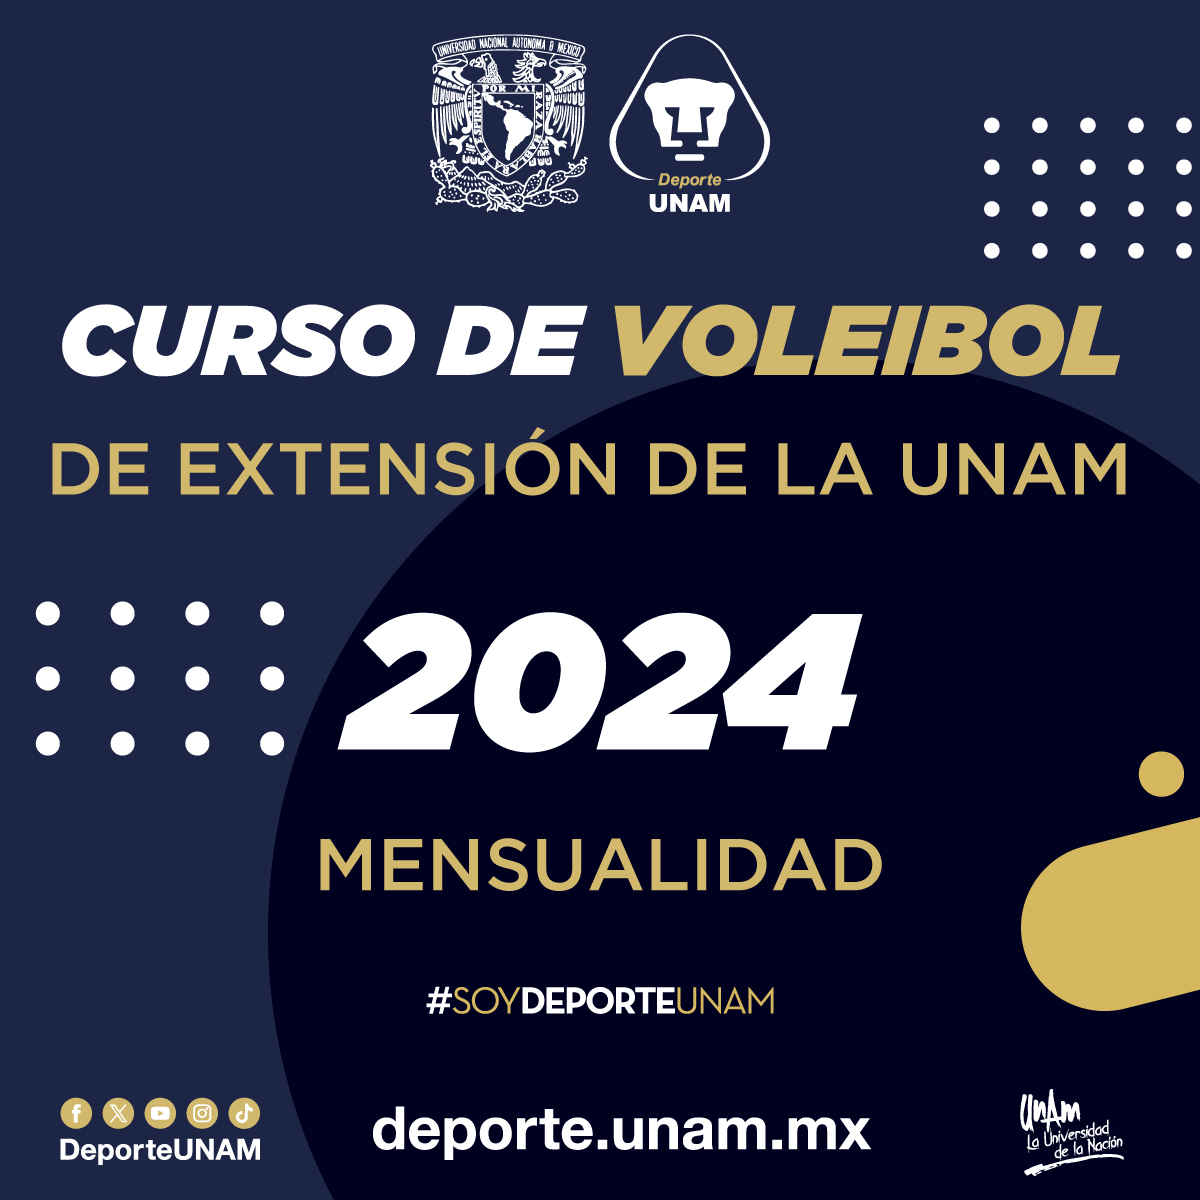 CURSO DE VOLEIBOL DE EXTENSIÓN DE LA UNAM 2024 MENSUALIDAD